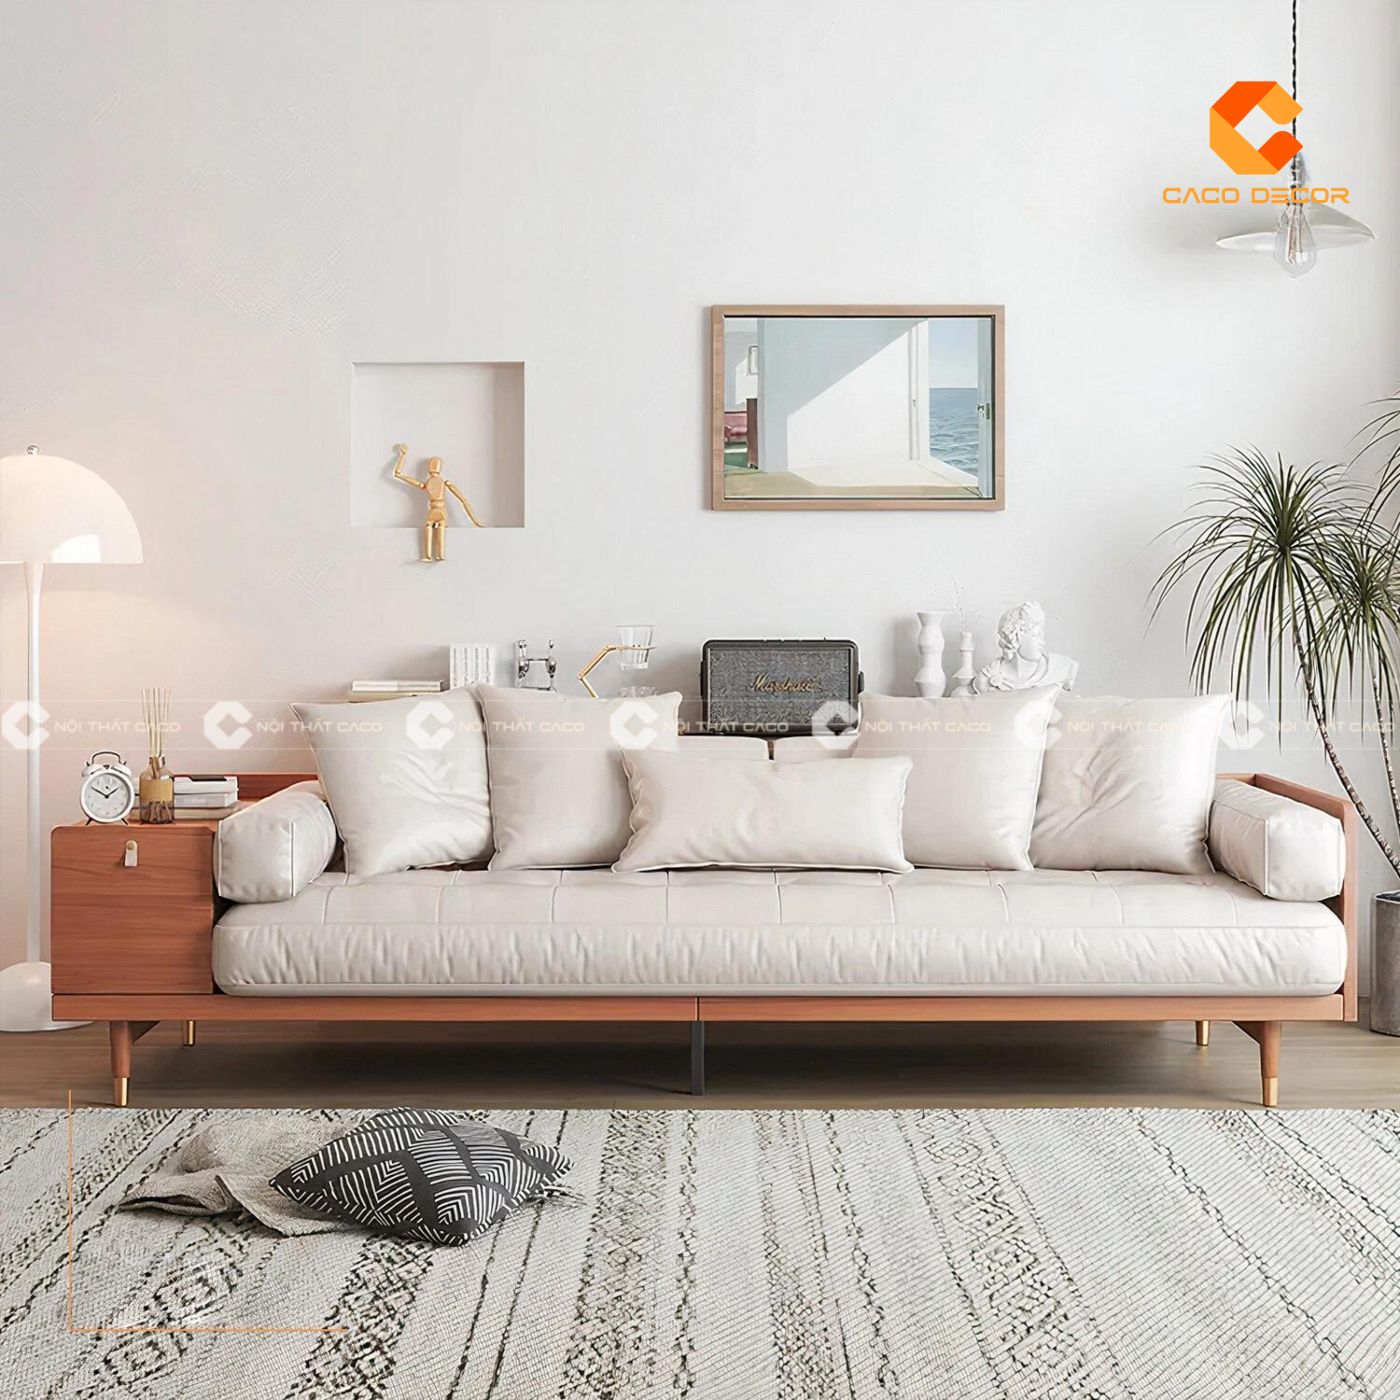 Sofa gỗ hiện đại lựa chọn hoàn hảo cho phòng khách chung cư 2